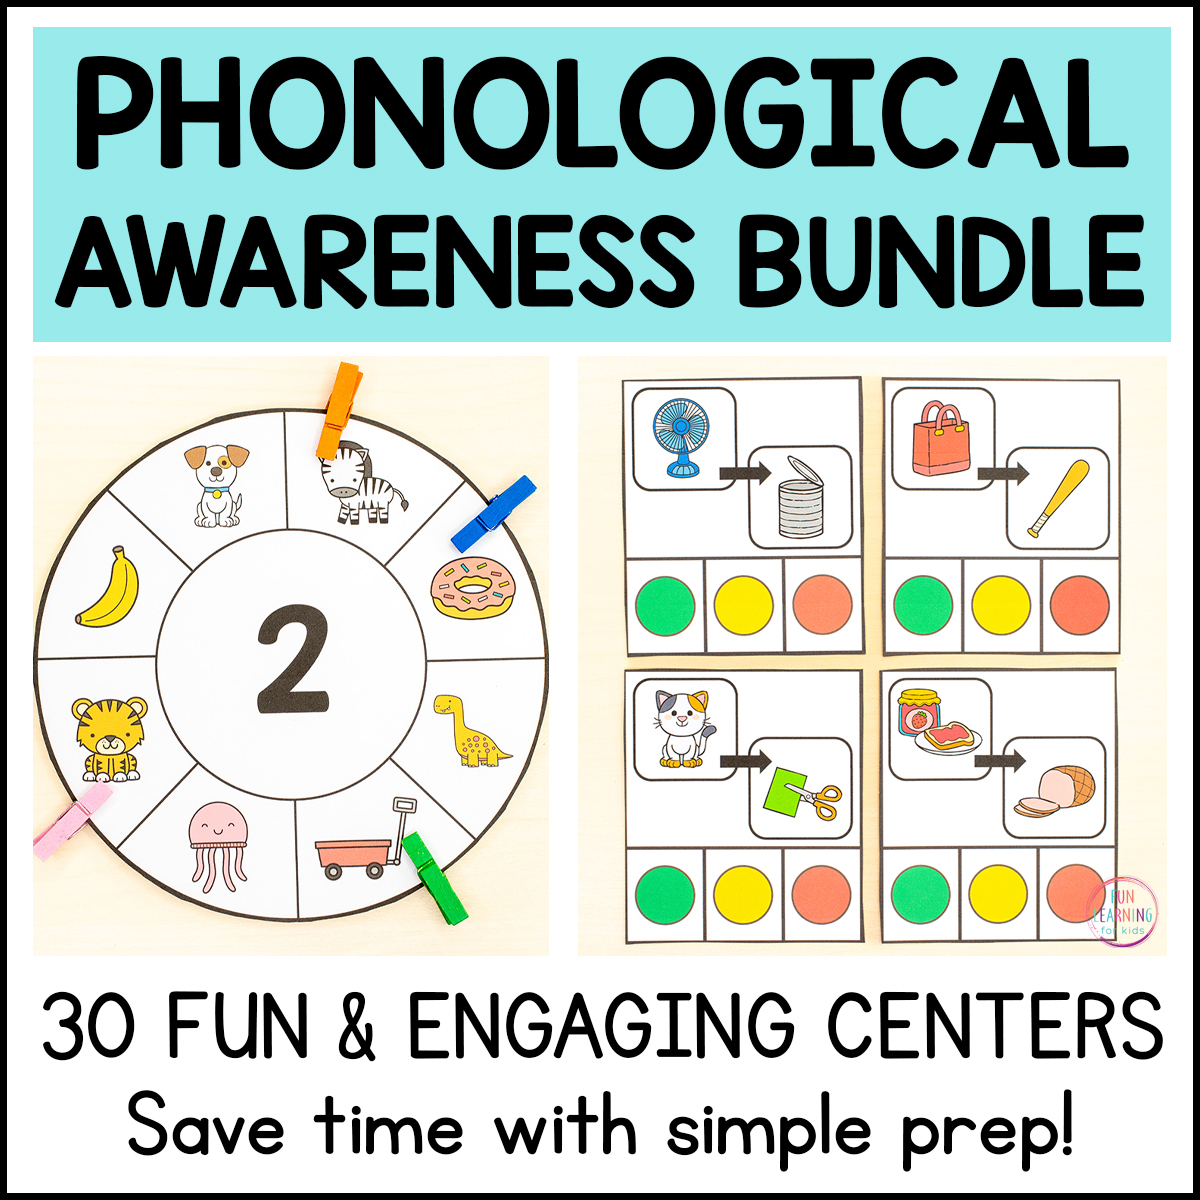 Phonological Awareness Bundle